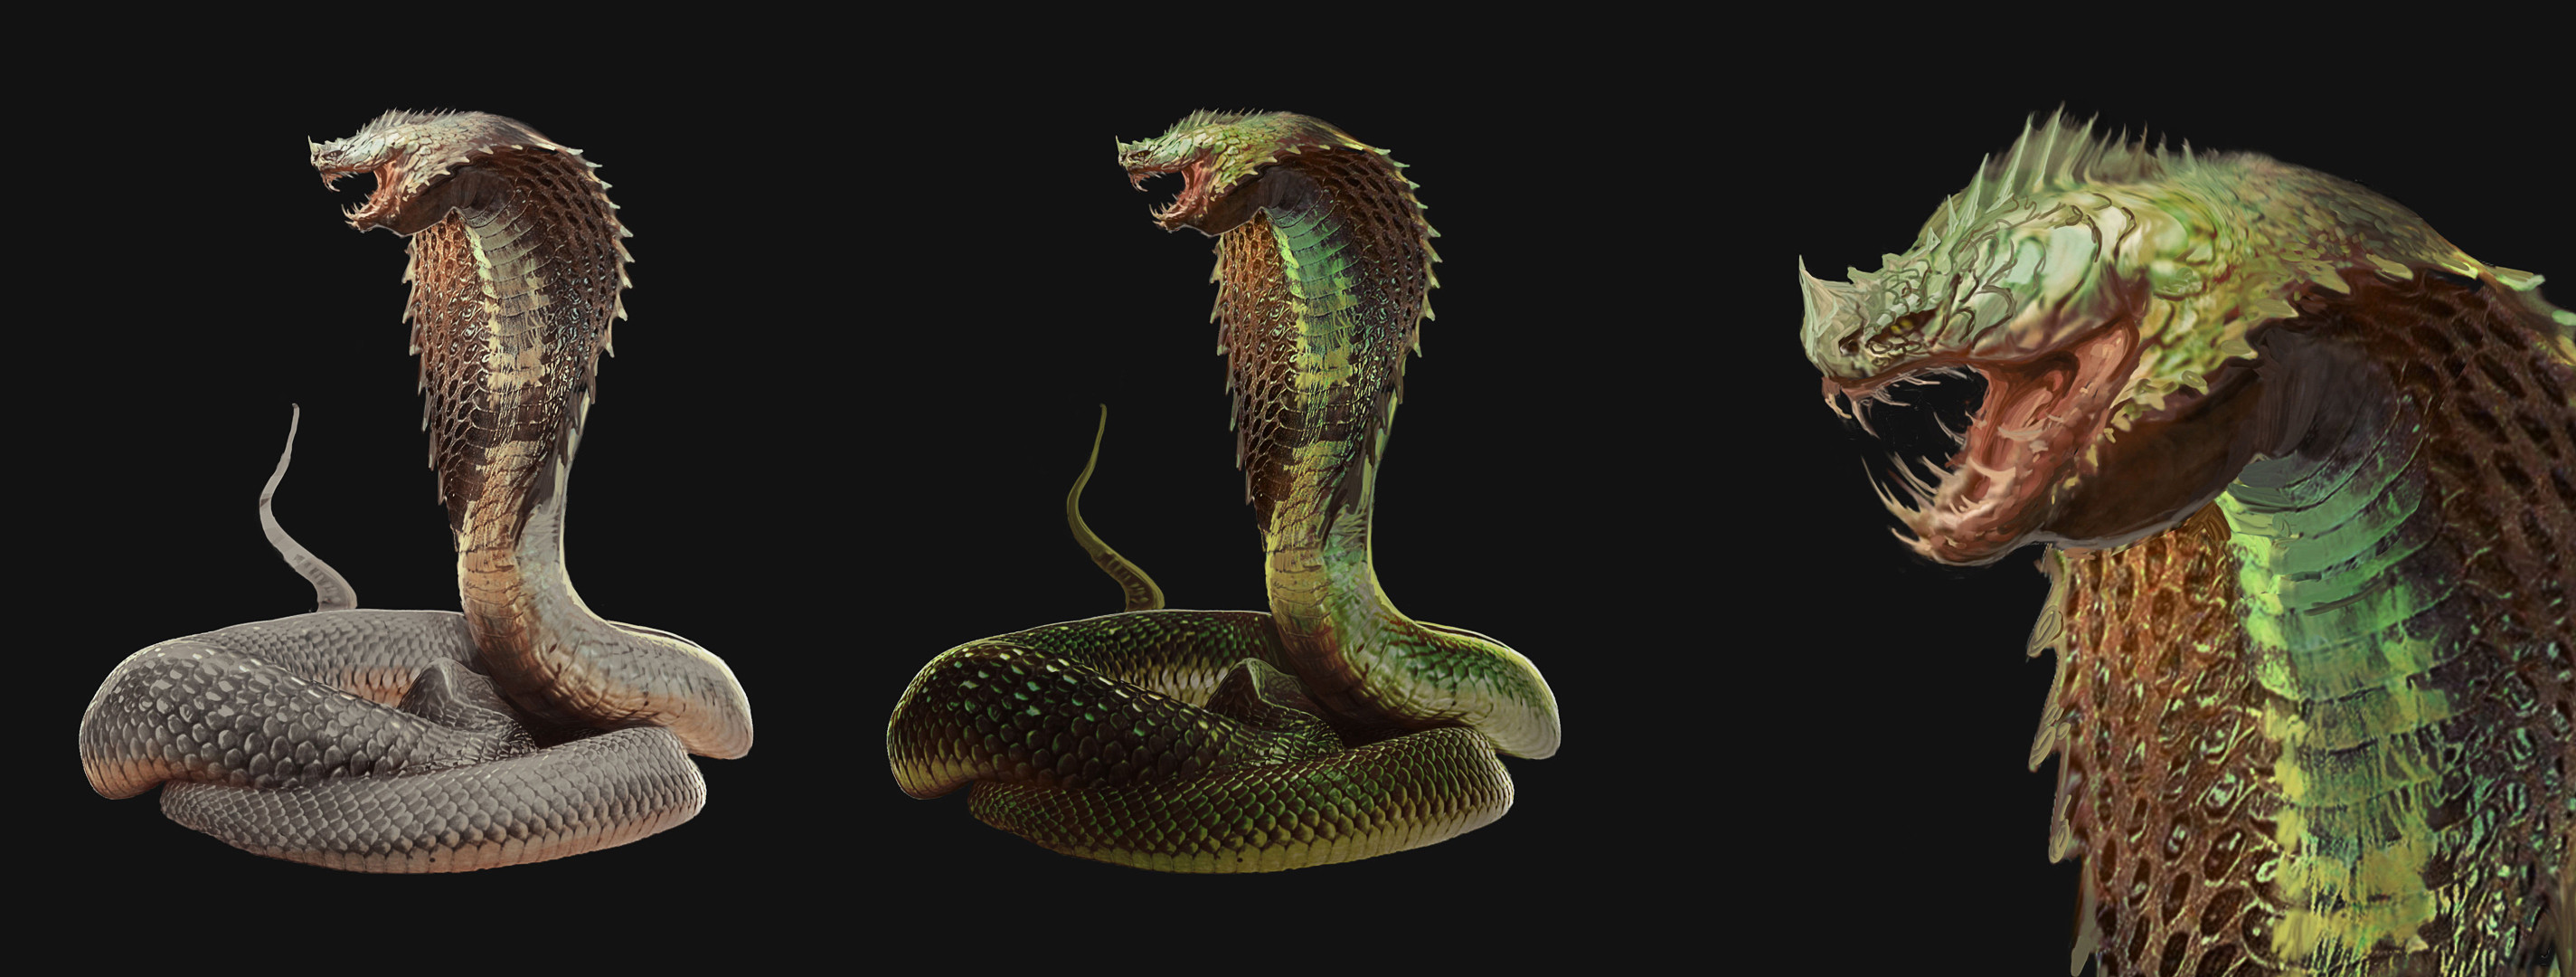 snake final design